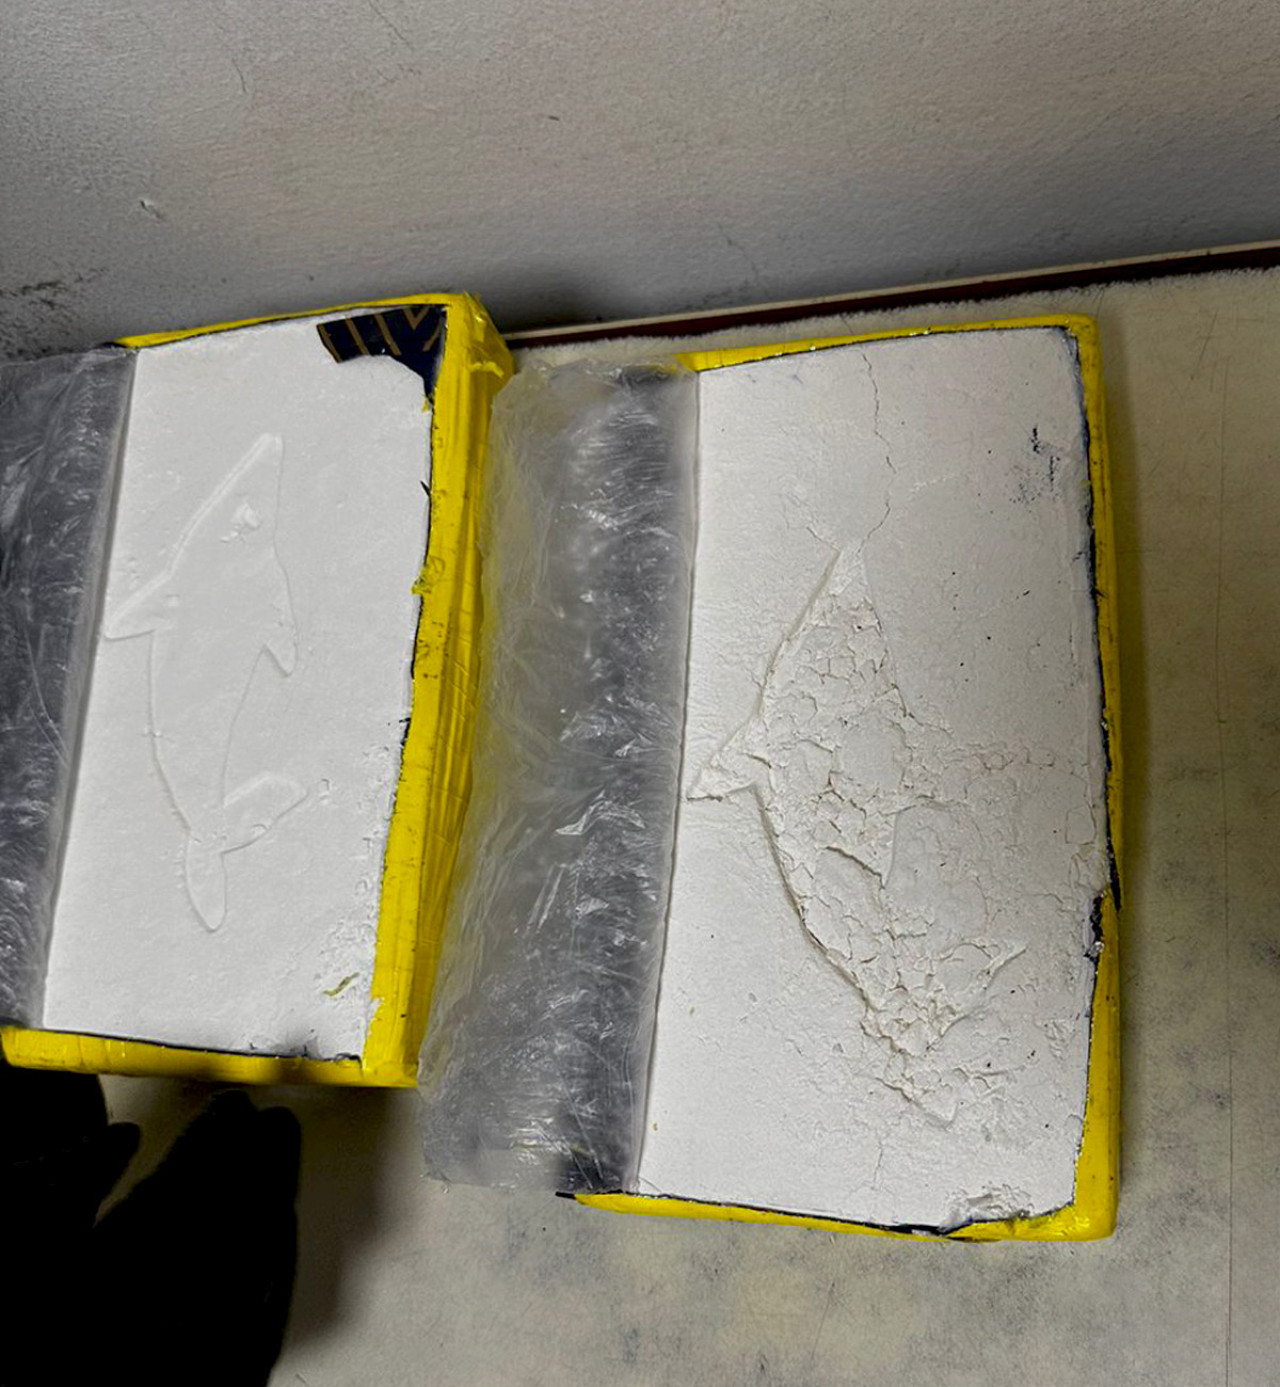 Aduana detuvo en la frontera con Paraguay una operación de contrabando de cocaína